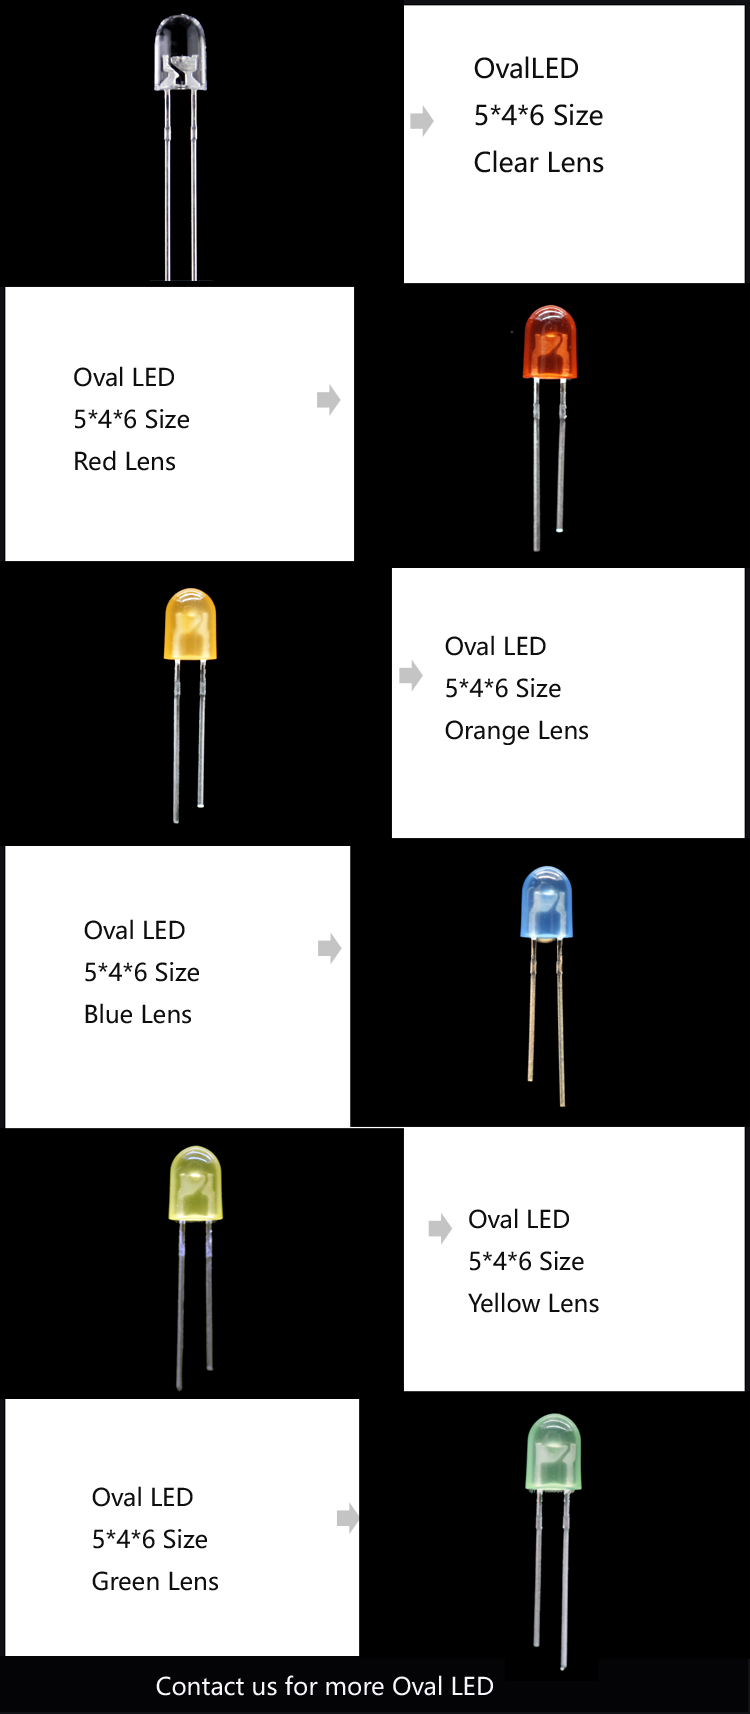 Oval LED - Through-hole LED